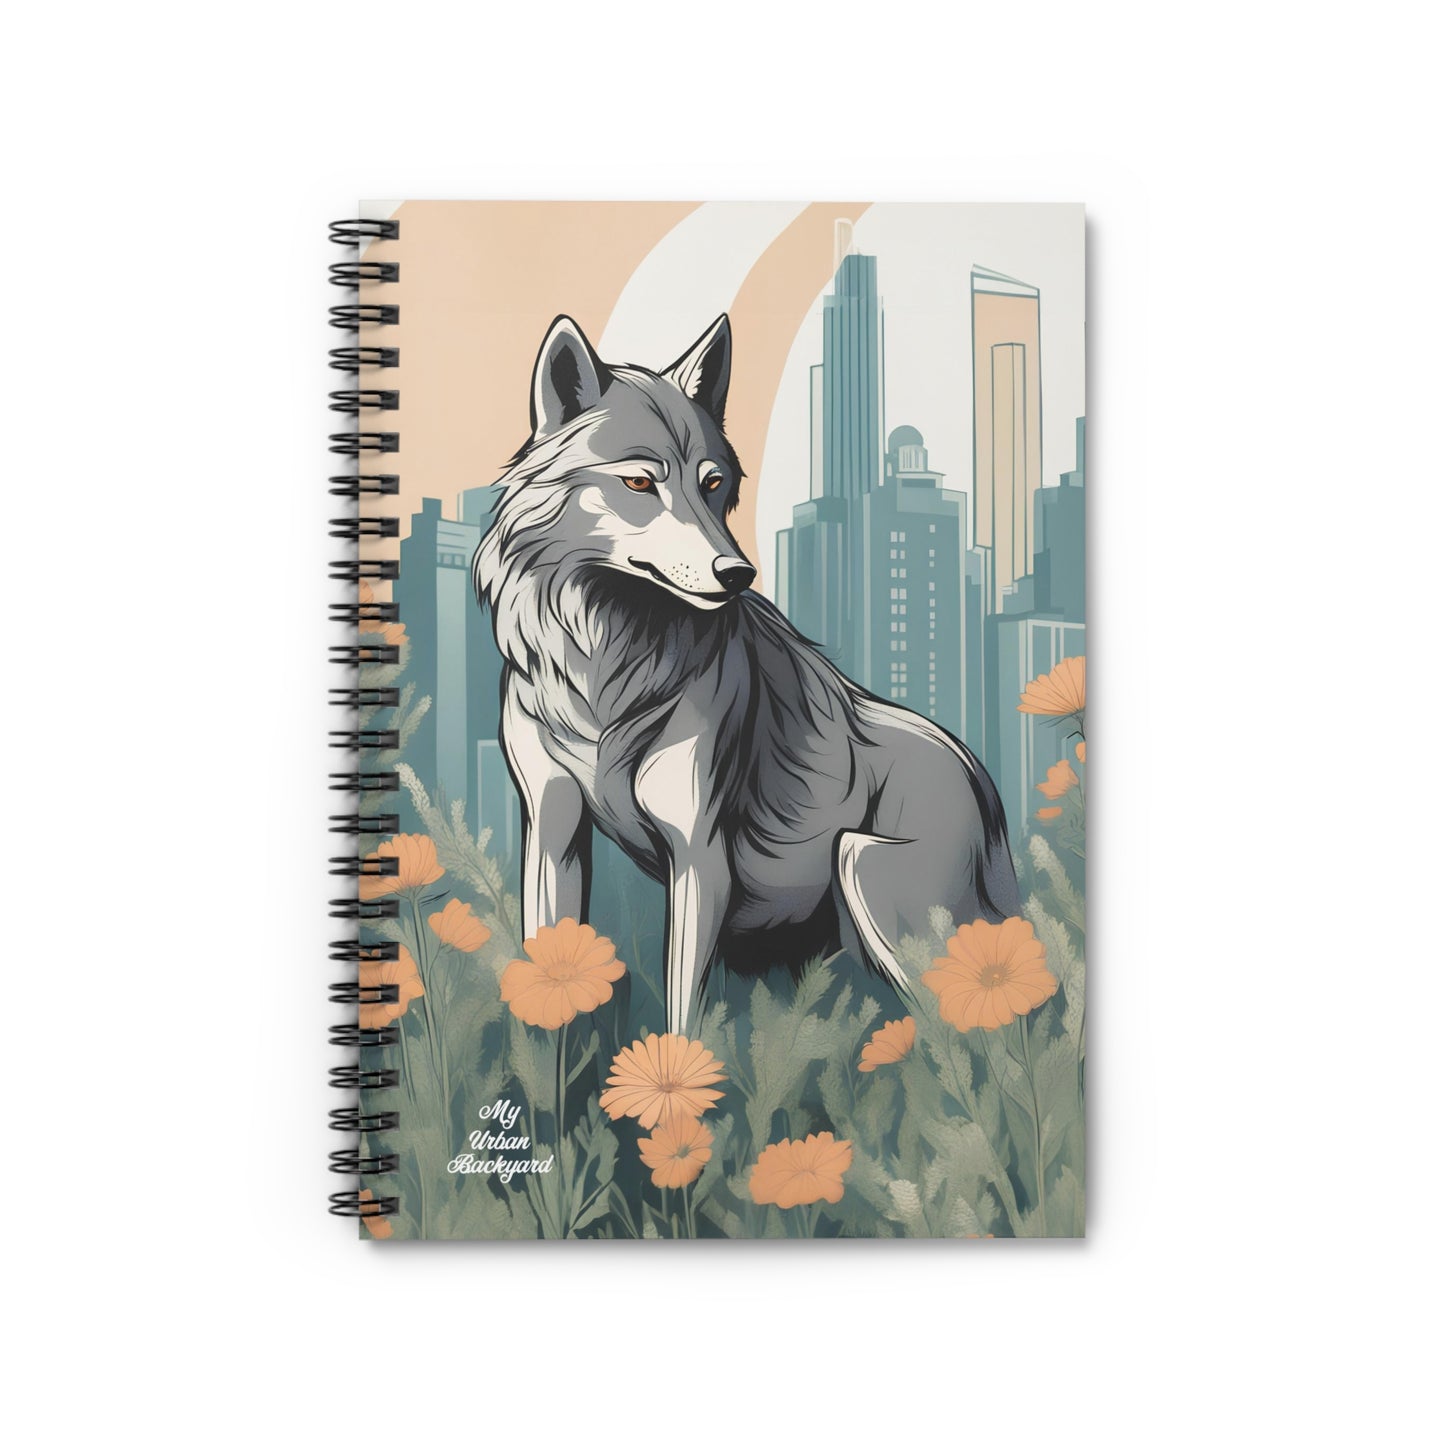 Urban Wolf, Spiral Notebook Journal - Write in Style